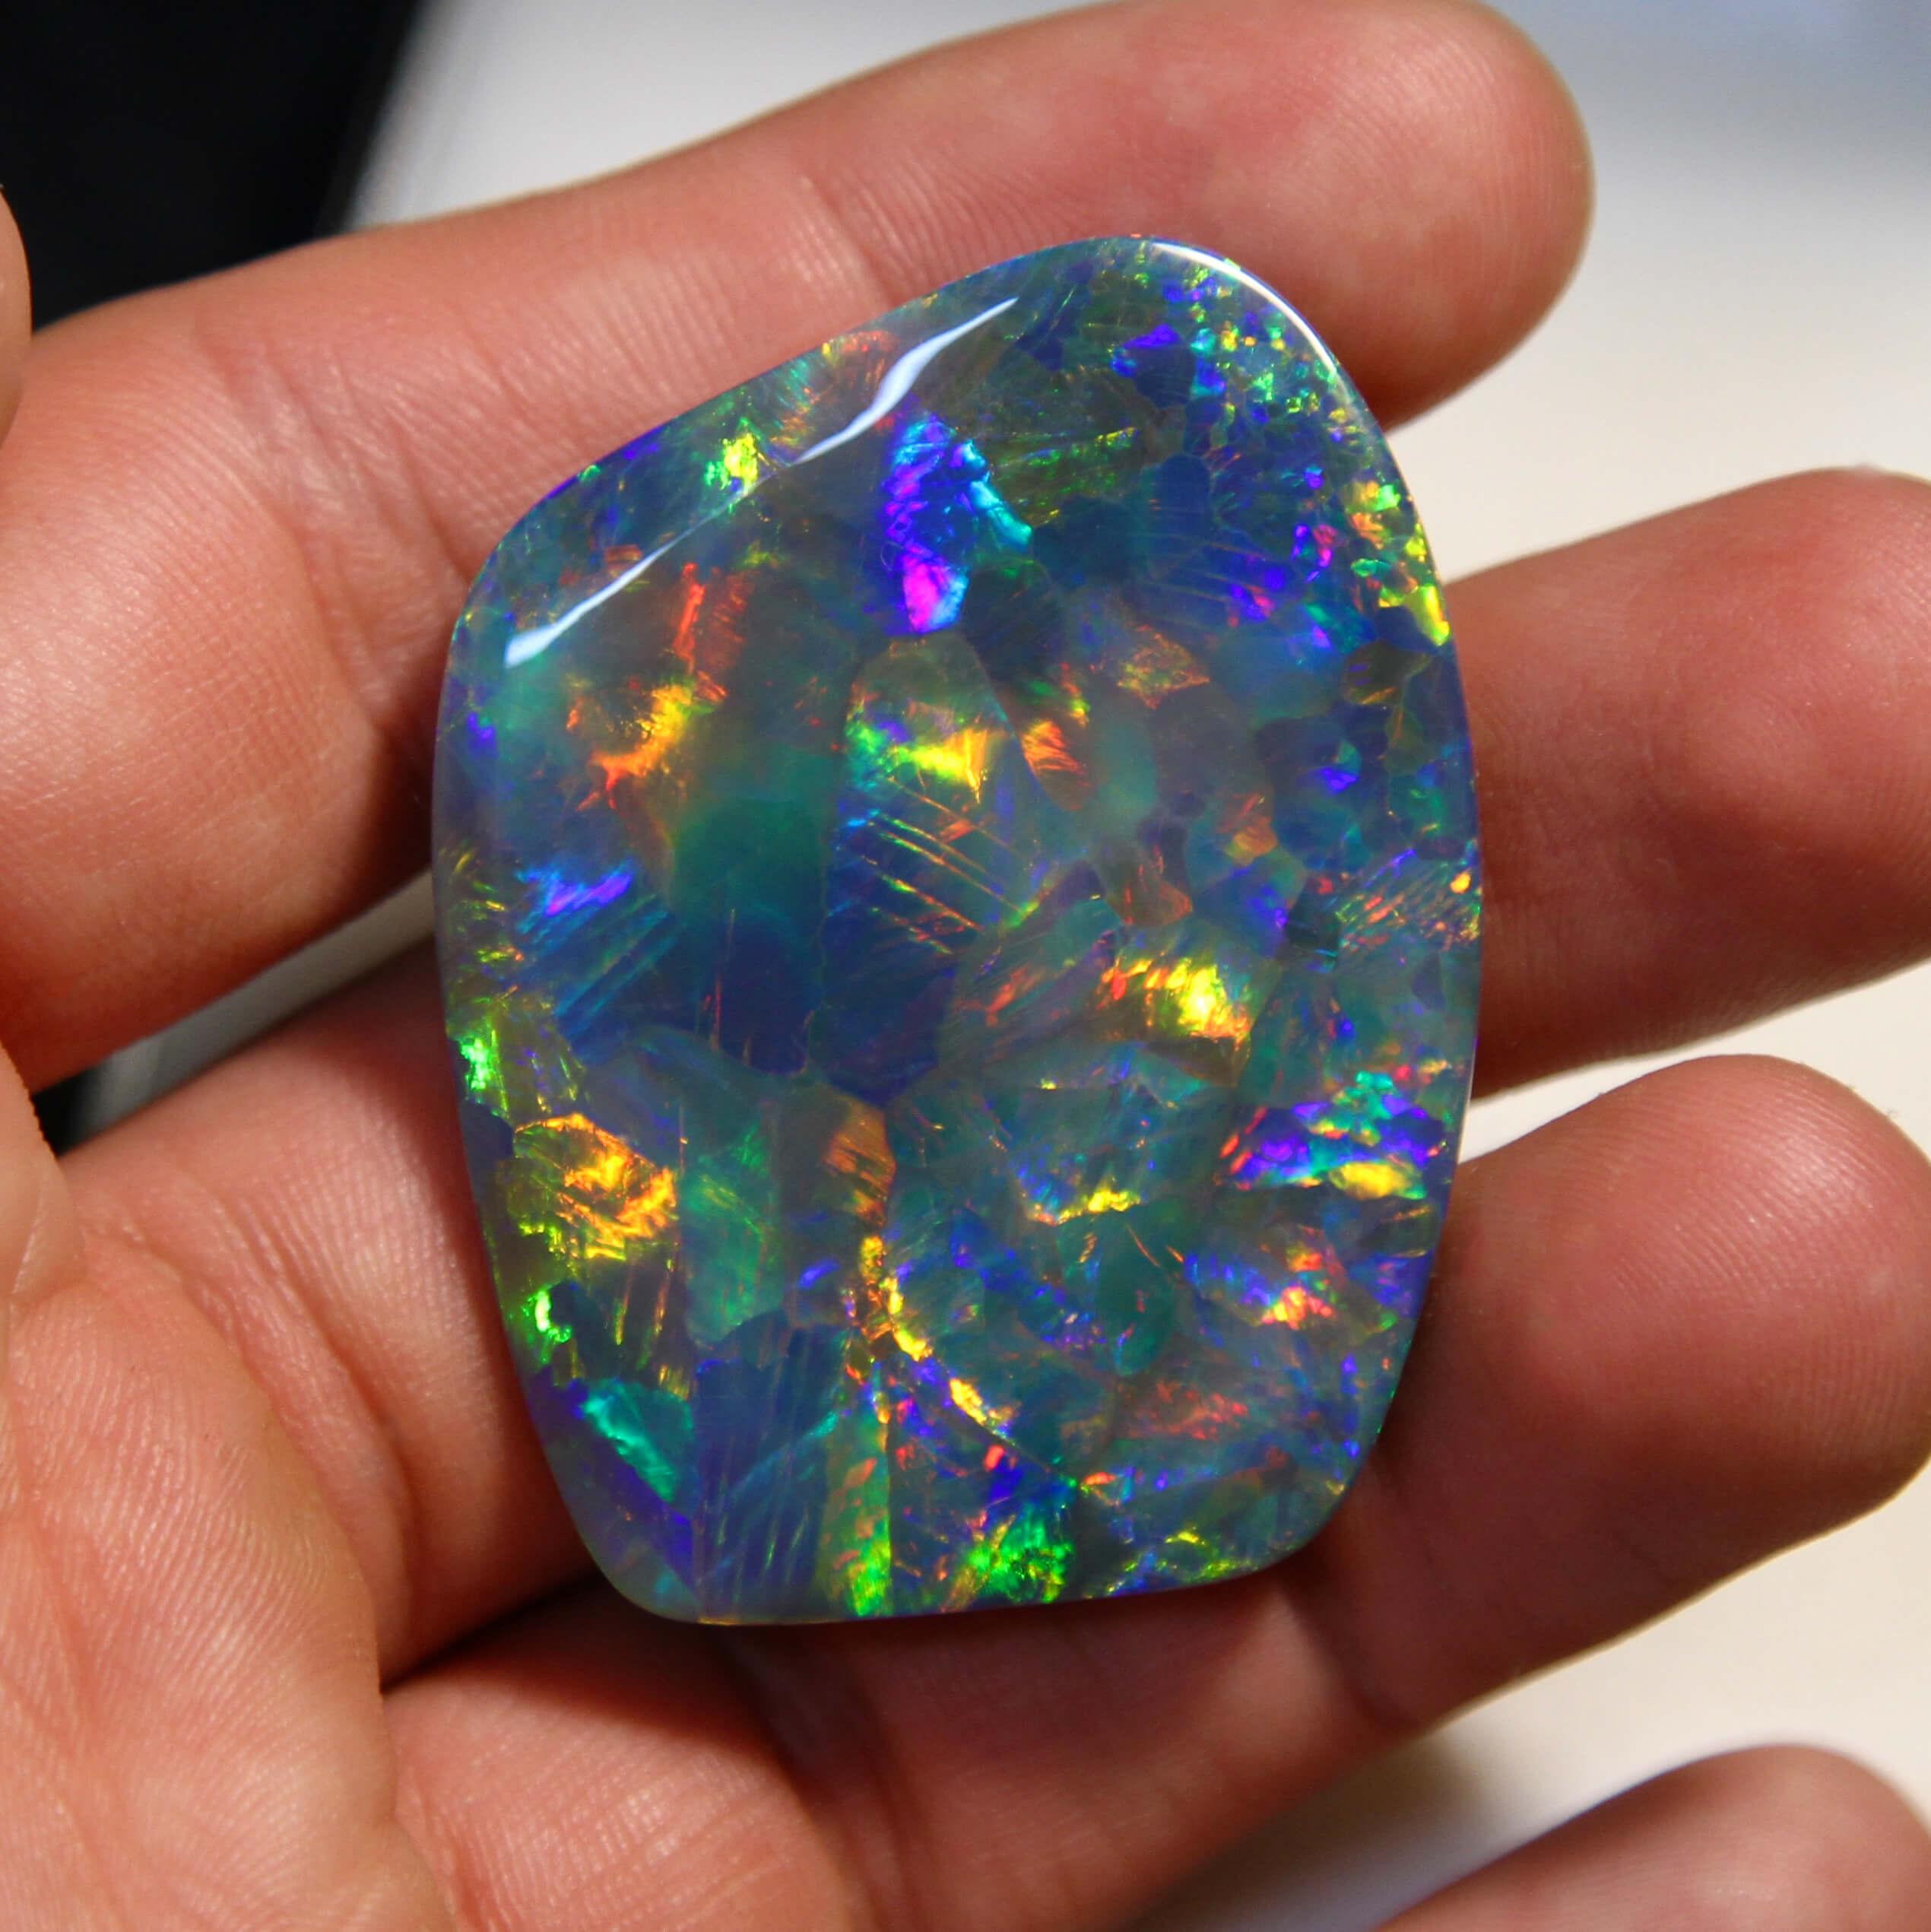 Cette gemme est une opale noire extrêmement rare d'Australie méridionale. Rivalisant avec la qualité et l'intensité de la couleur des meilleures opales noires jamais extraites, cette gemme est une opale de qualité musée. Près de 100cts d'opale noire